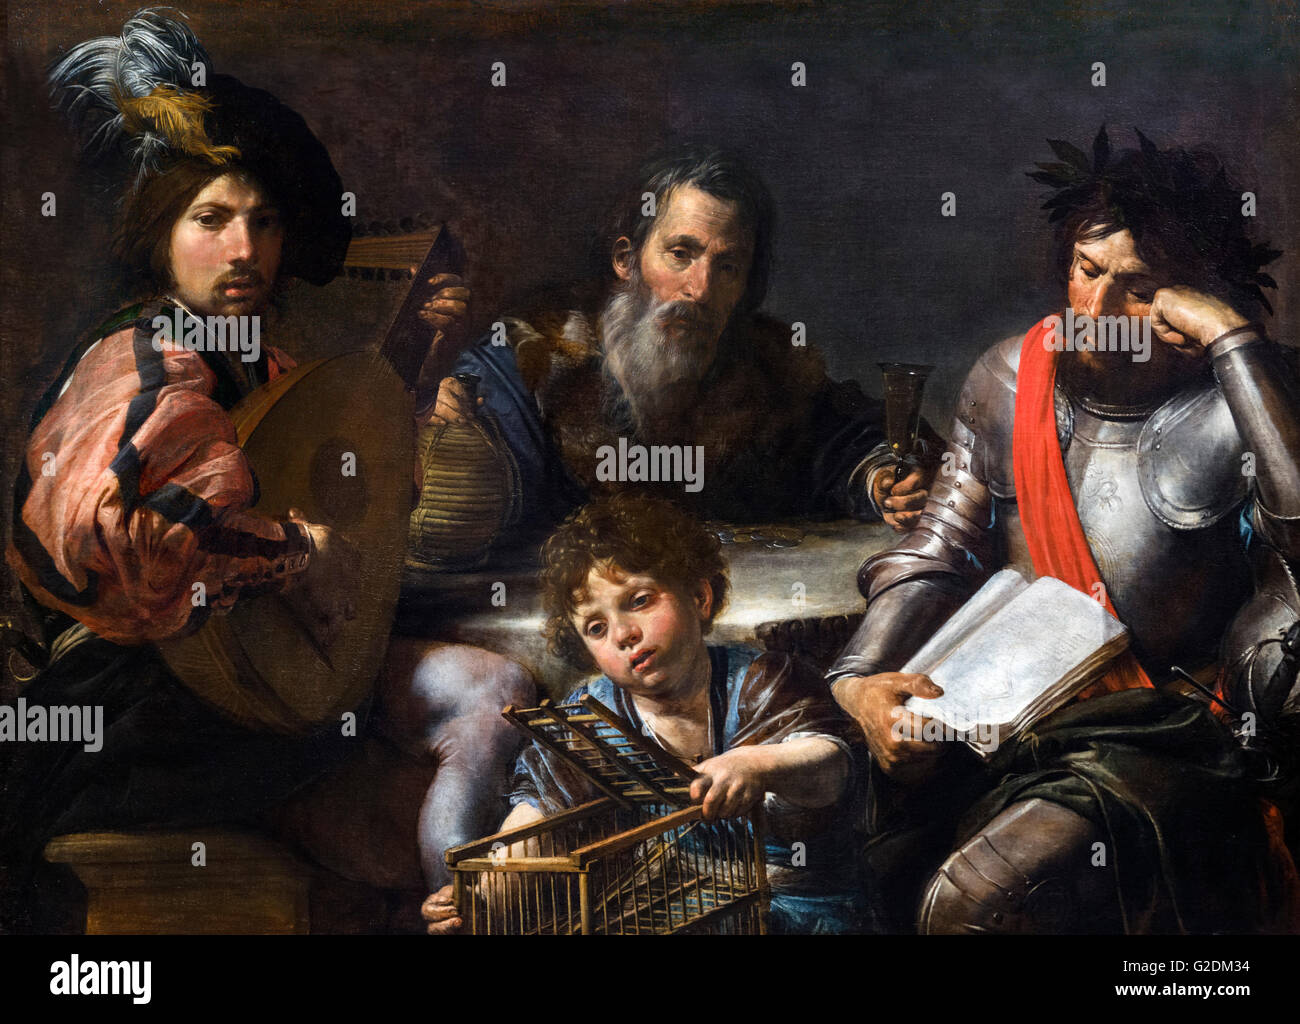 Die vier Alter des Mannes von Valentin de Boulogne, Öl auf Leinwand, c.1629. Das Bild zeigt vier Phasen des Lebens leben: Kindheit (Zentrum im Vordergrund); Jugend (links); Männlichkeit (rechts) und Alter (Zentrum im Hintergrund). Stockfoto